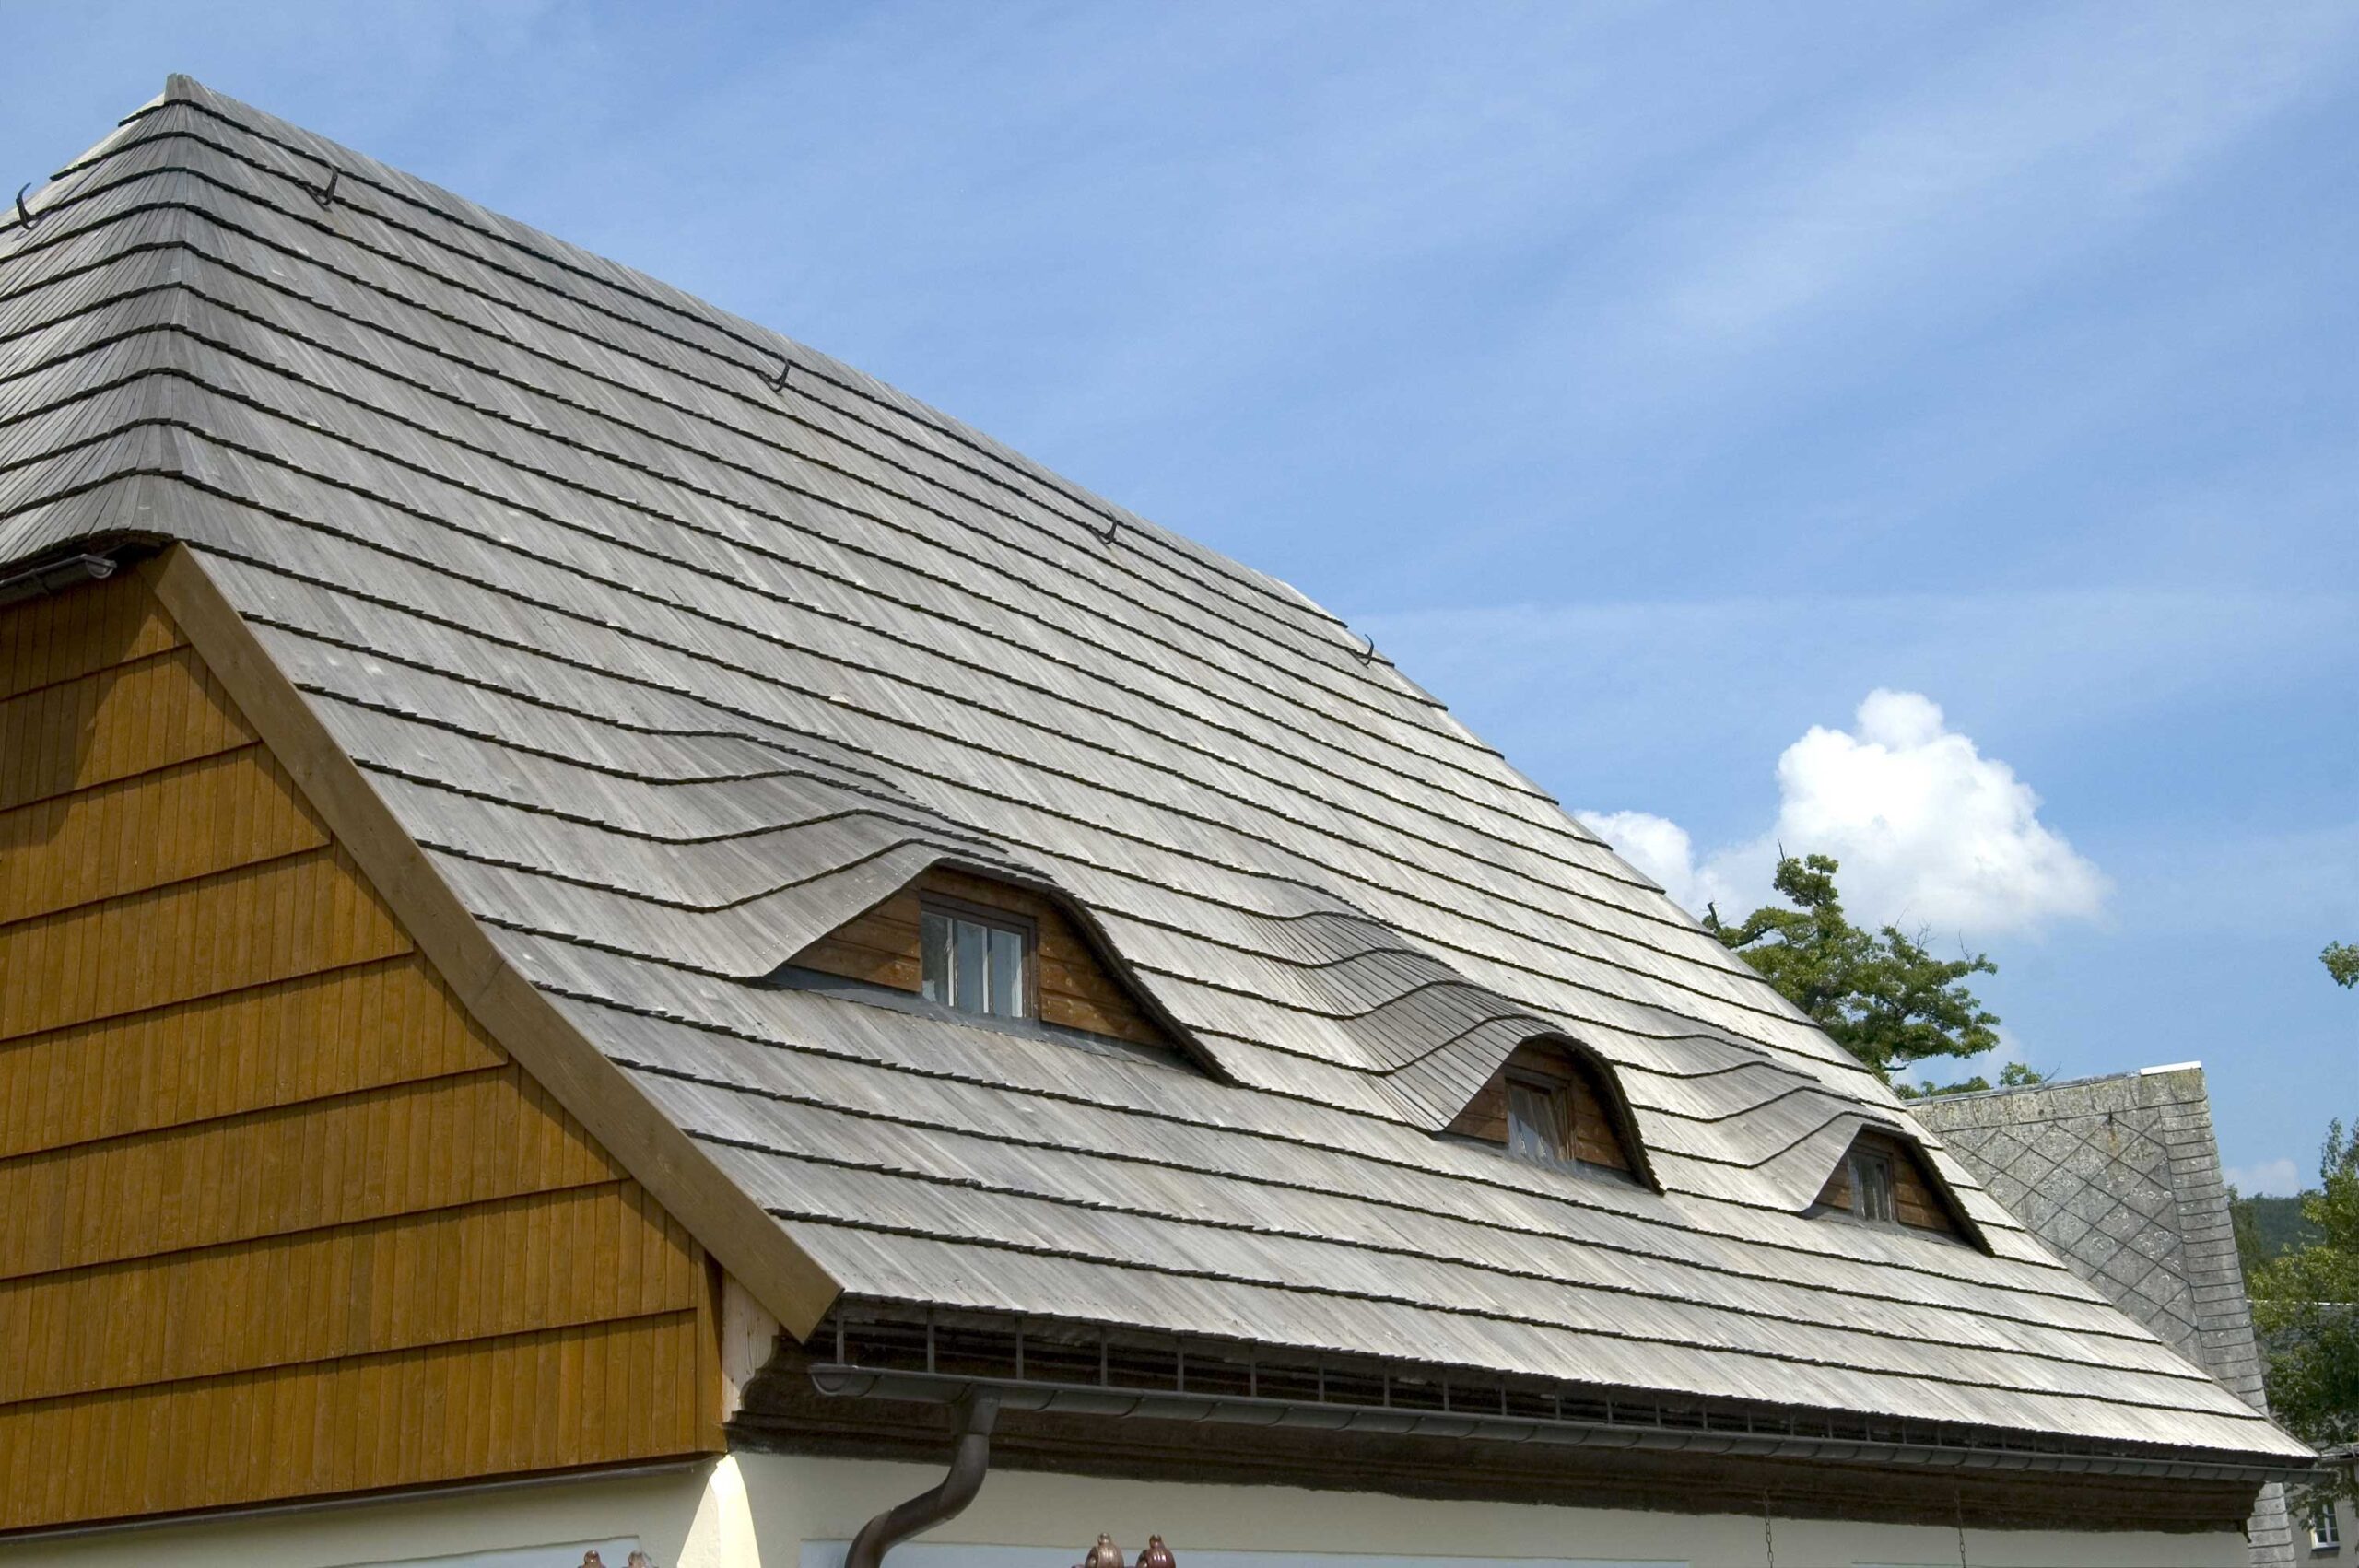 cedar roof cost, cedar roof installation, new cedar roof cost